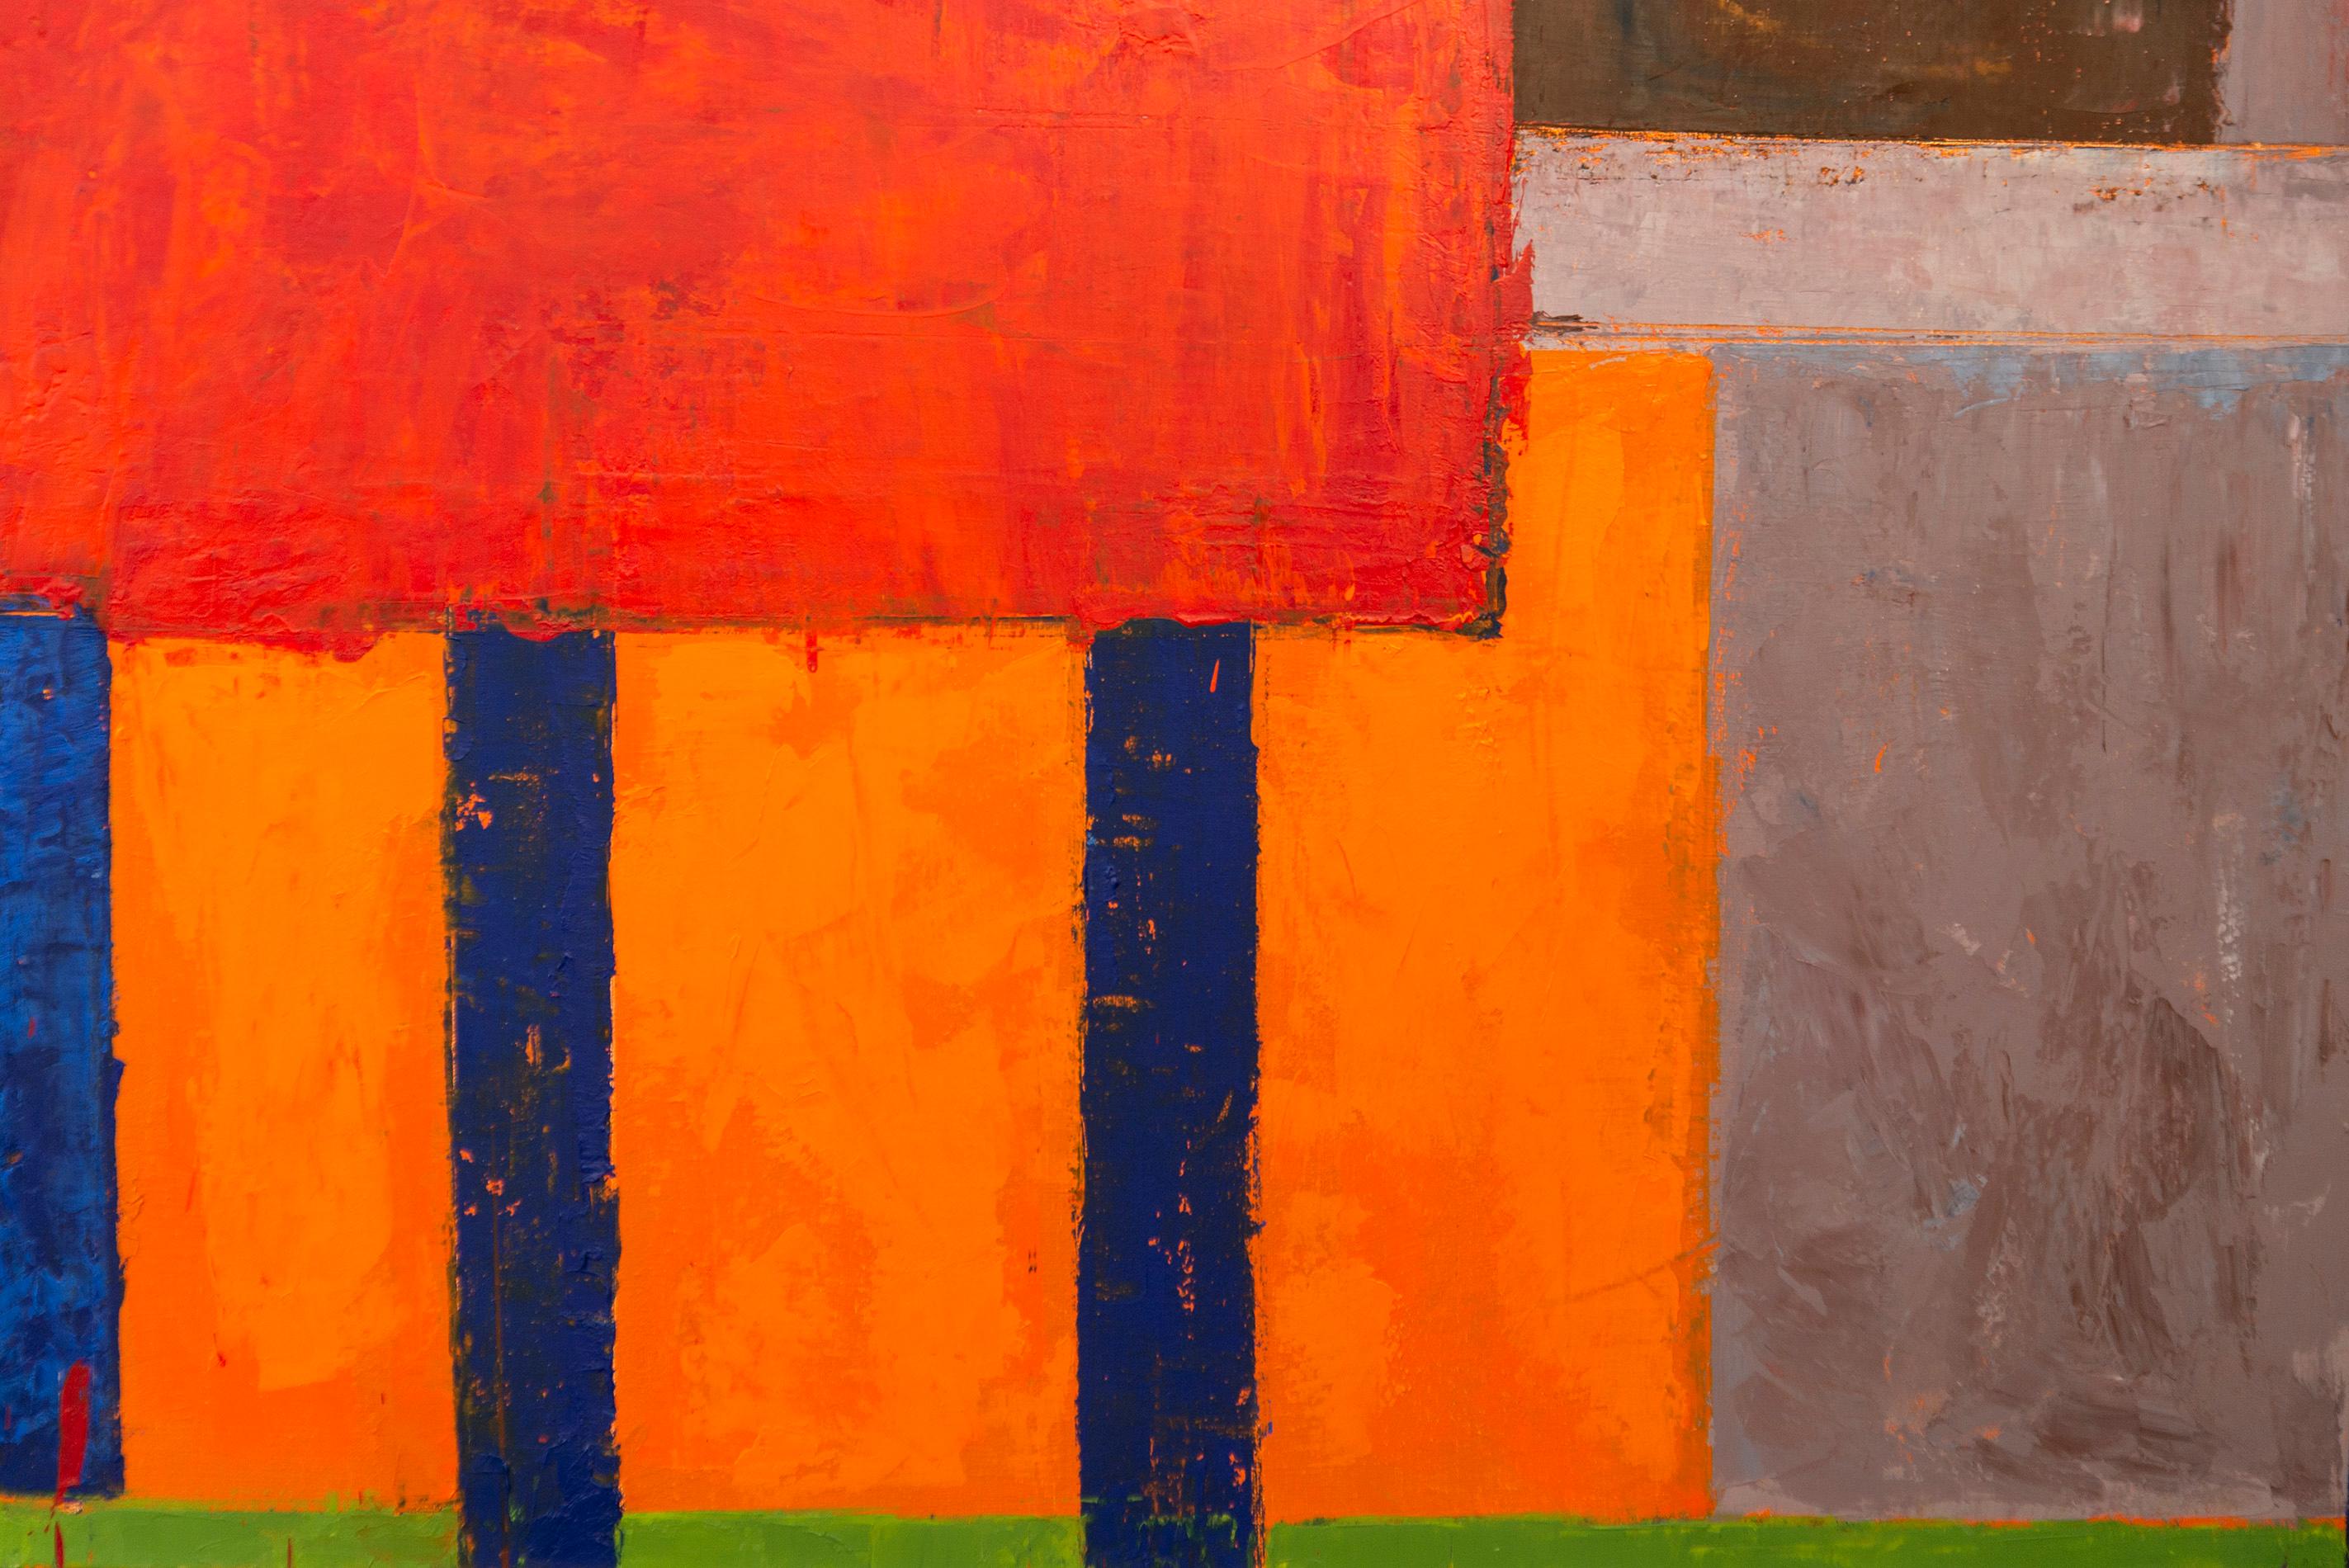 Dans cette peinture abstraite colorée de David Sorensen, le rouge vif attire l'attention du spectateur.
L'artiste canadien a réalisé une série d'huiles après avoir visité La Havane, à Cuba, en 1999. La série Havana a été réalisée à l'aide d'une